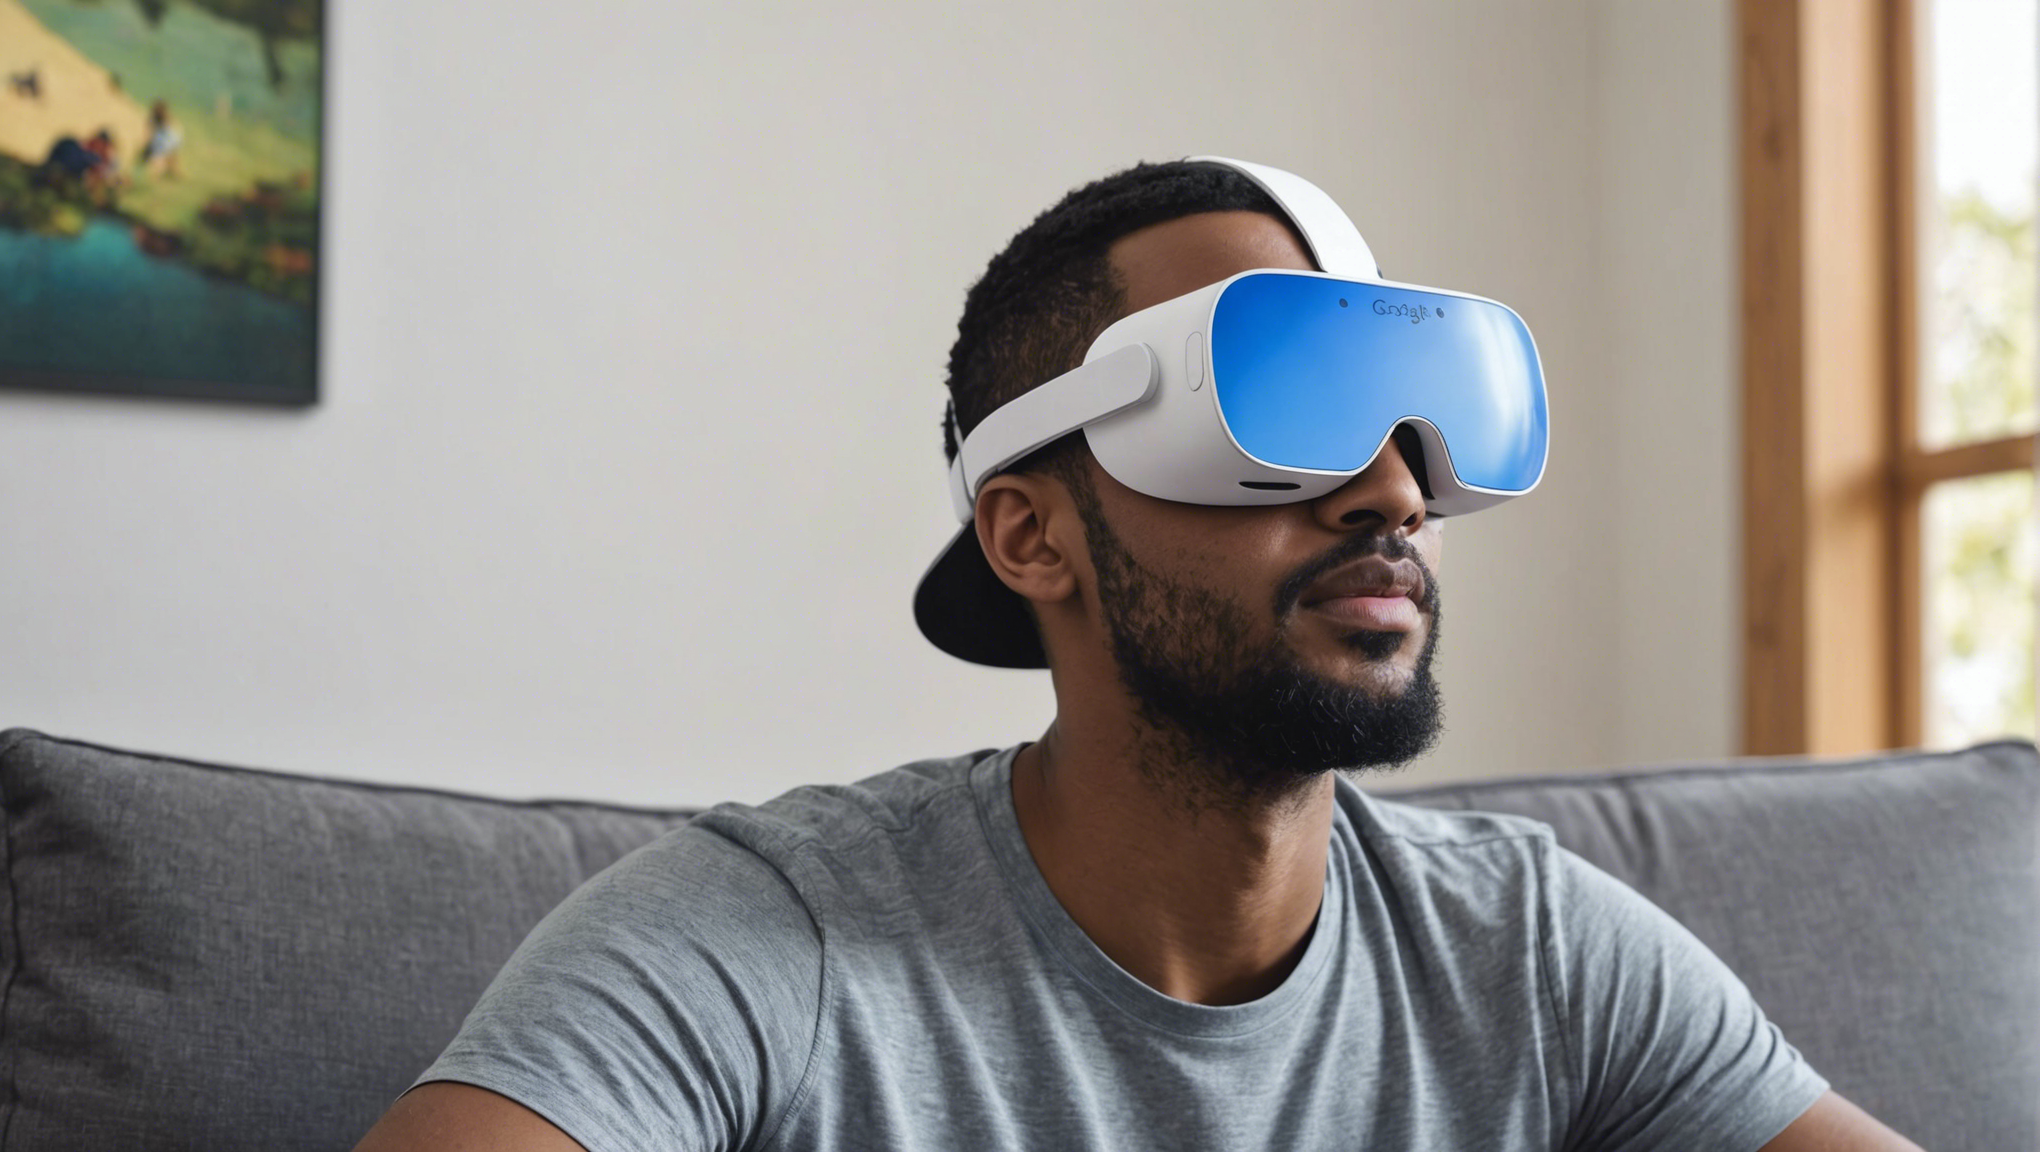 découvrez comment google daydream réinvente la réalité virtuelle avec une expérience immersive unique, des contenus captivants et des contrôles intuitifs.